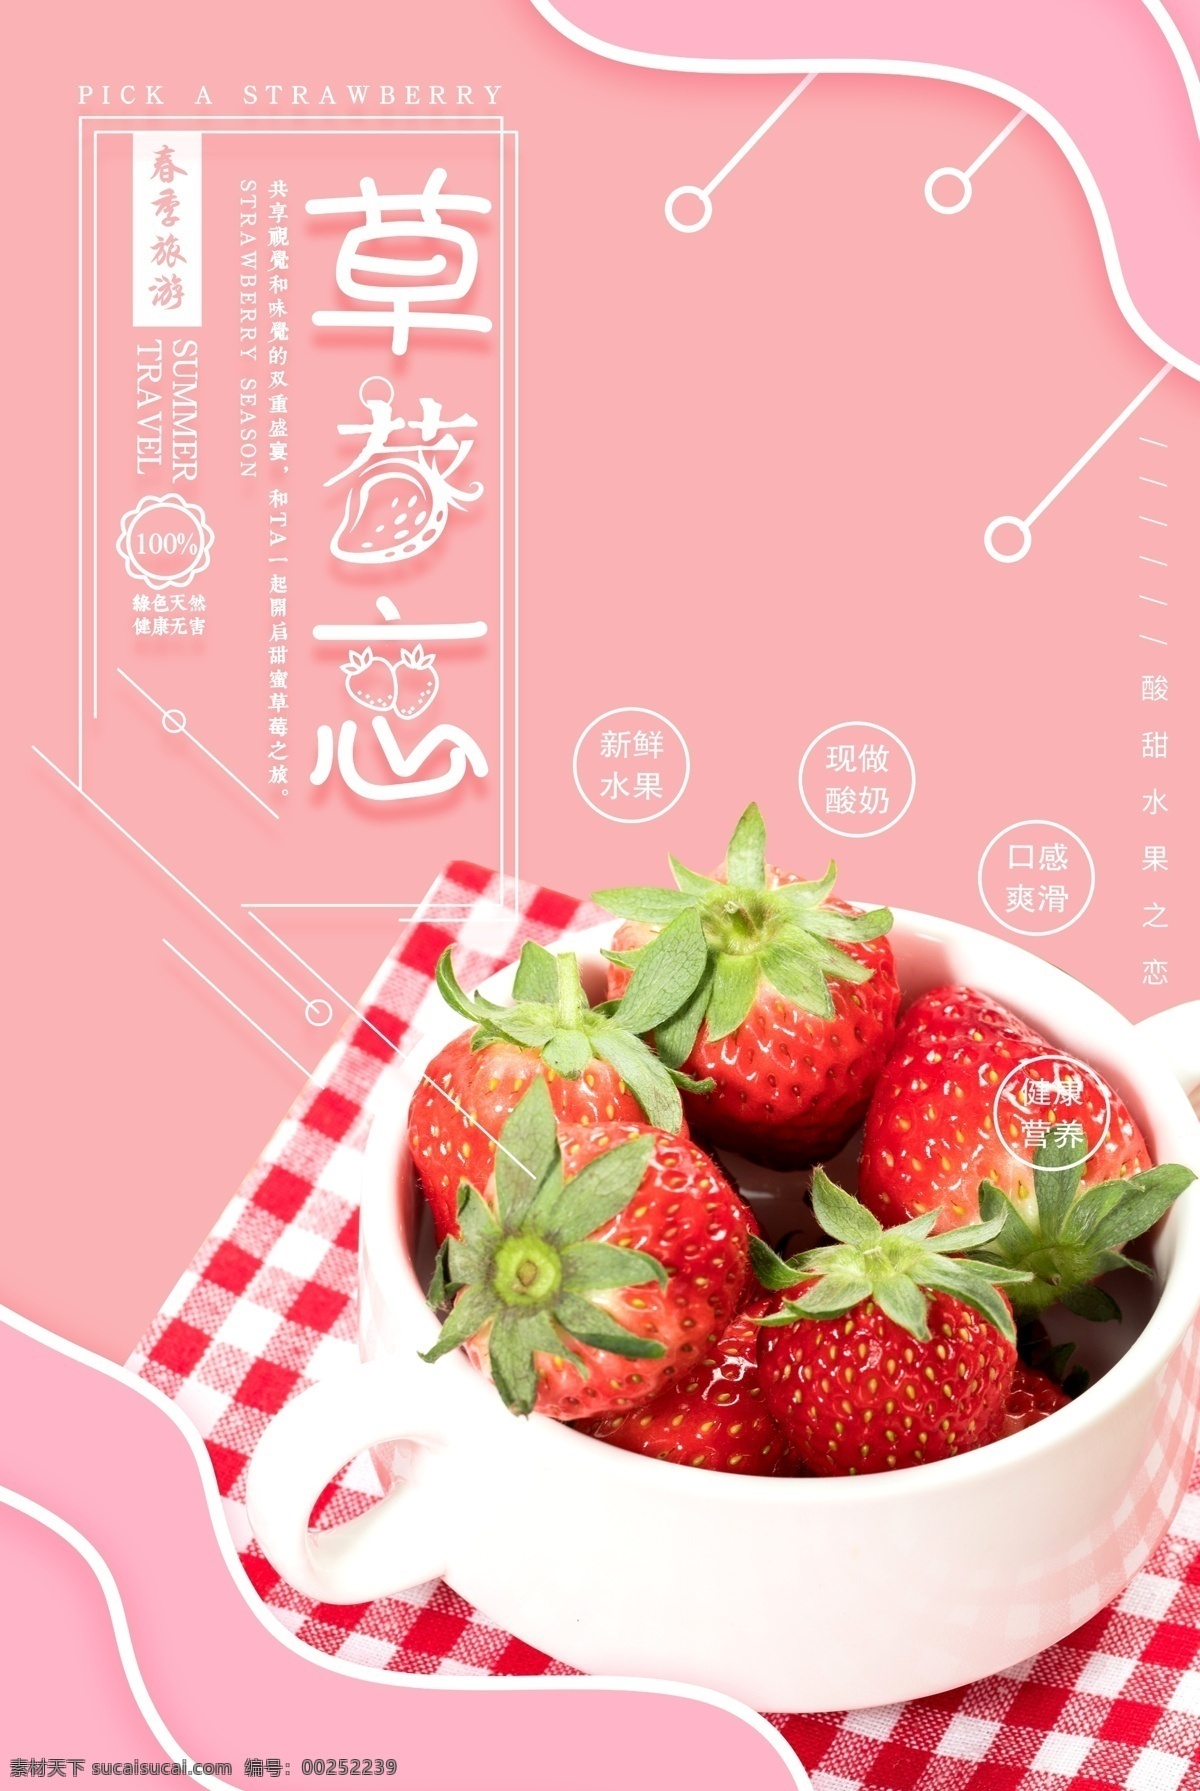 简约 新鲜 草莓 打折 促销 水果 海报 上新 采摘 美食 精美粉色 粉嫩 活动优惠 水果海报 果蔬 新鲜草莓 新鲜水果 新鲜批发 天然 可口 促销食物 打折促销